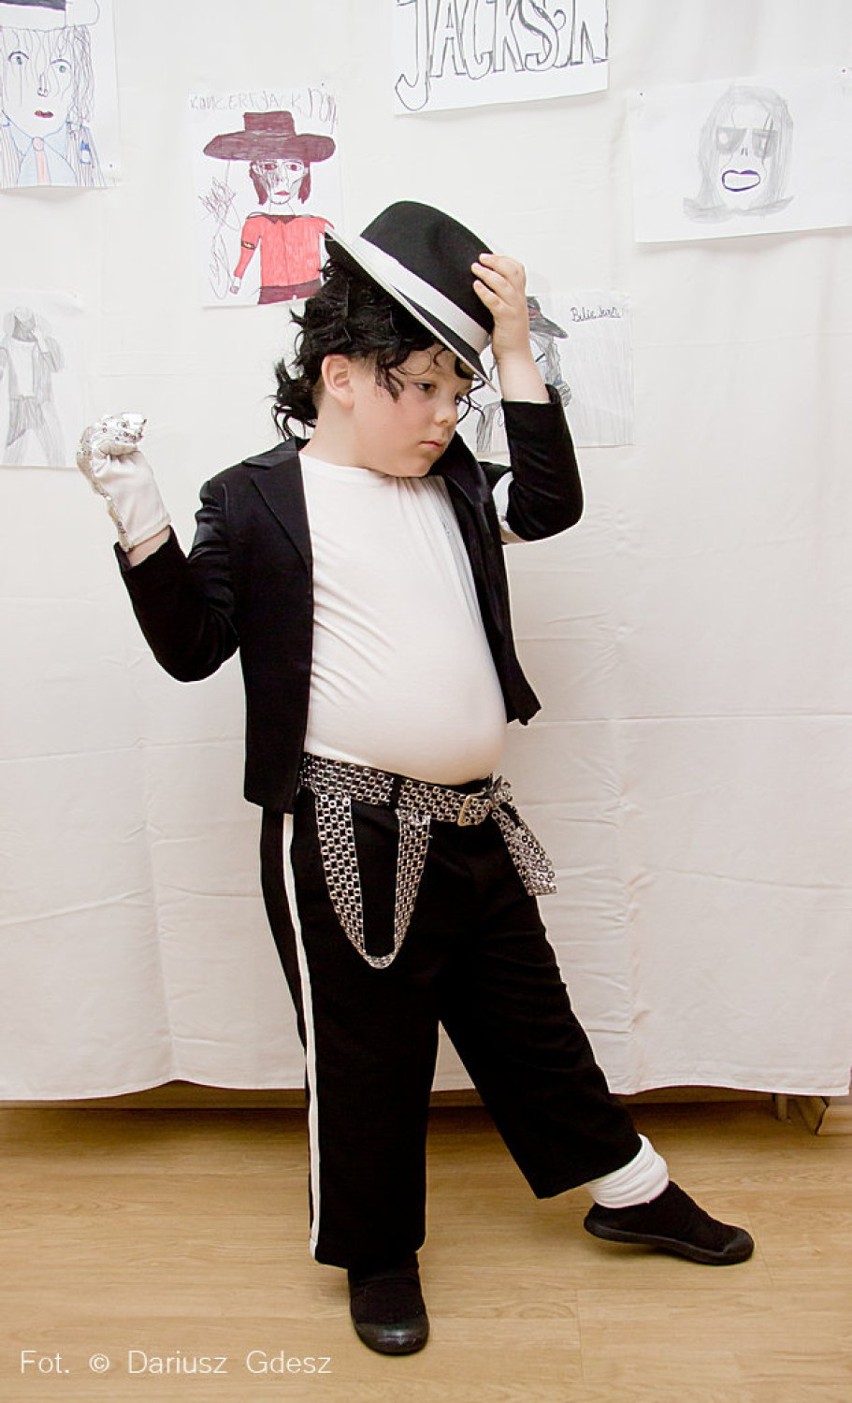 Wałbrzych: Oliwier Górski mały Michael Jackson [ZDJĘCIA i FILMY]